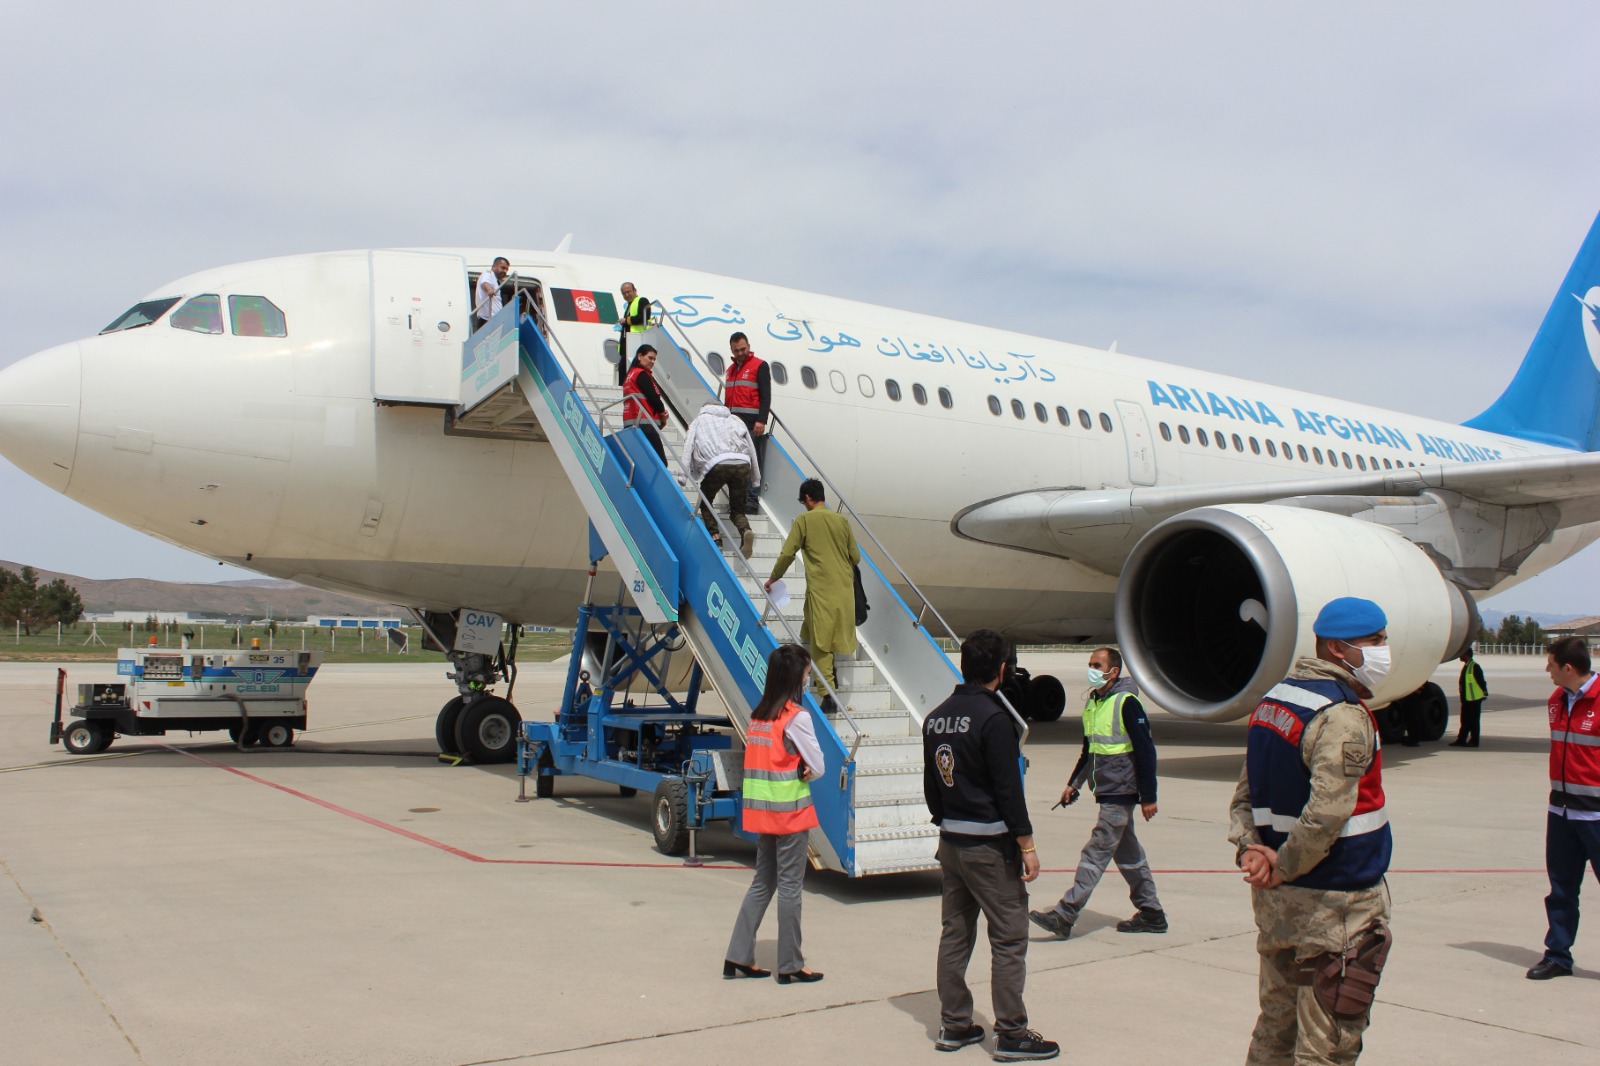 Malatya'dan Afganistan uyruklu 227 kaçak ülkelerine uçakla gönderildi. Aylarca yürüyerek  ülkeye giriş yapan Afganlılar, ülkelerine VİP  hizmeti alarak uçakla gönderildi.